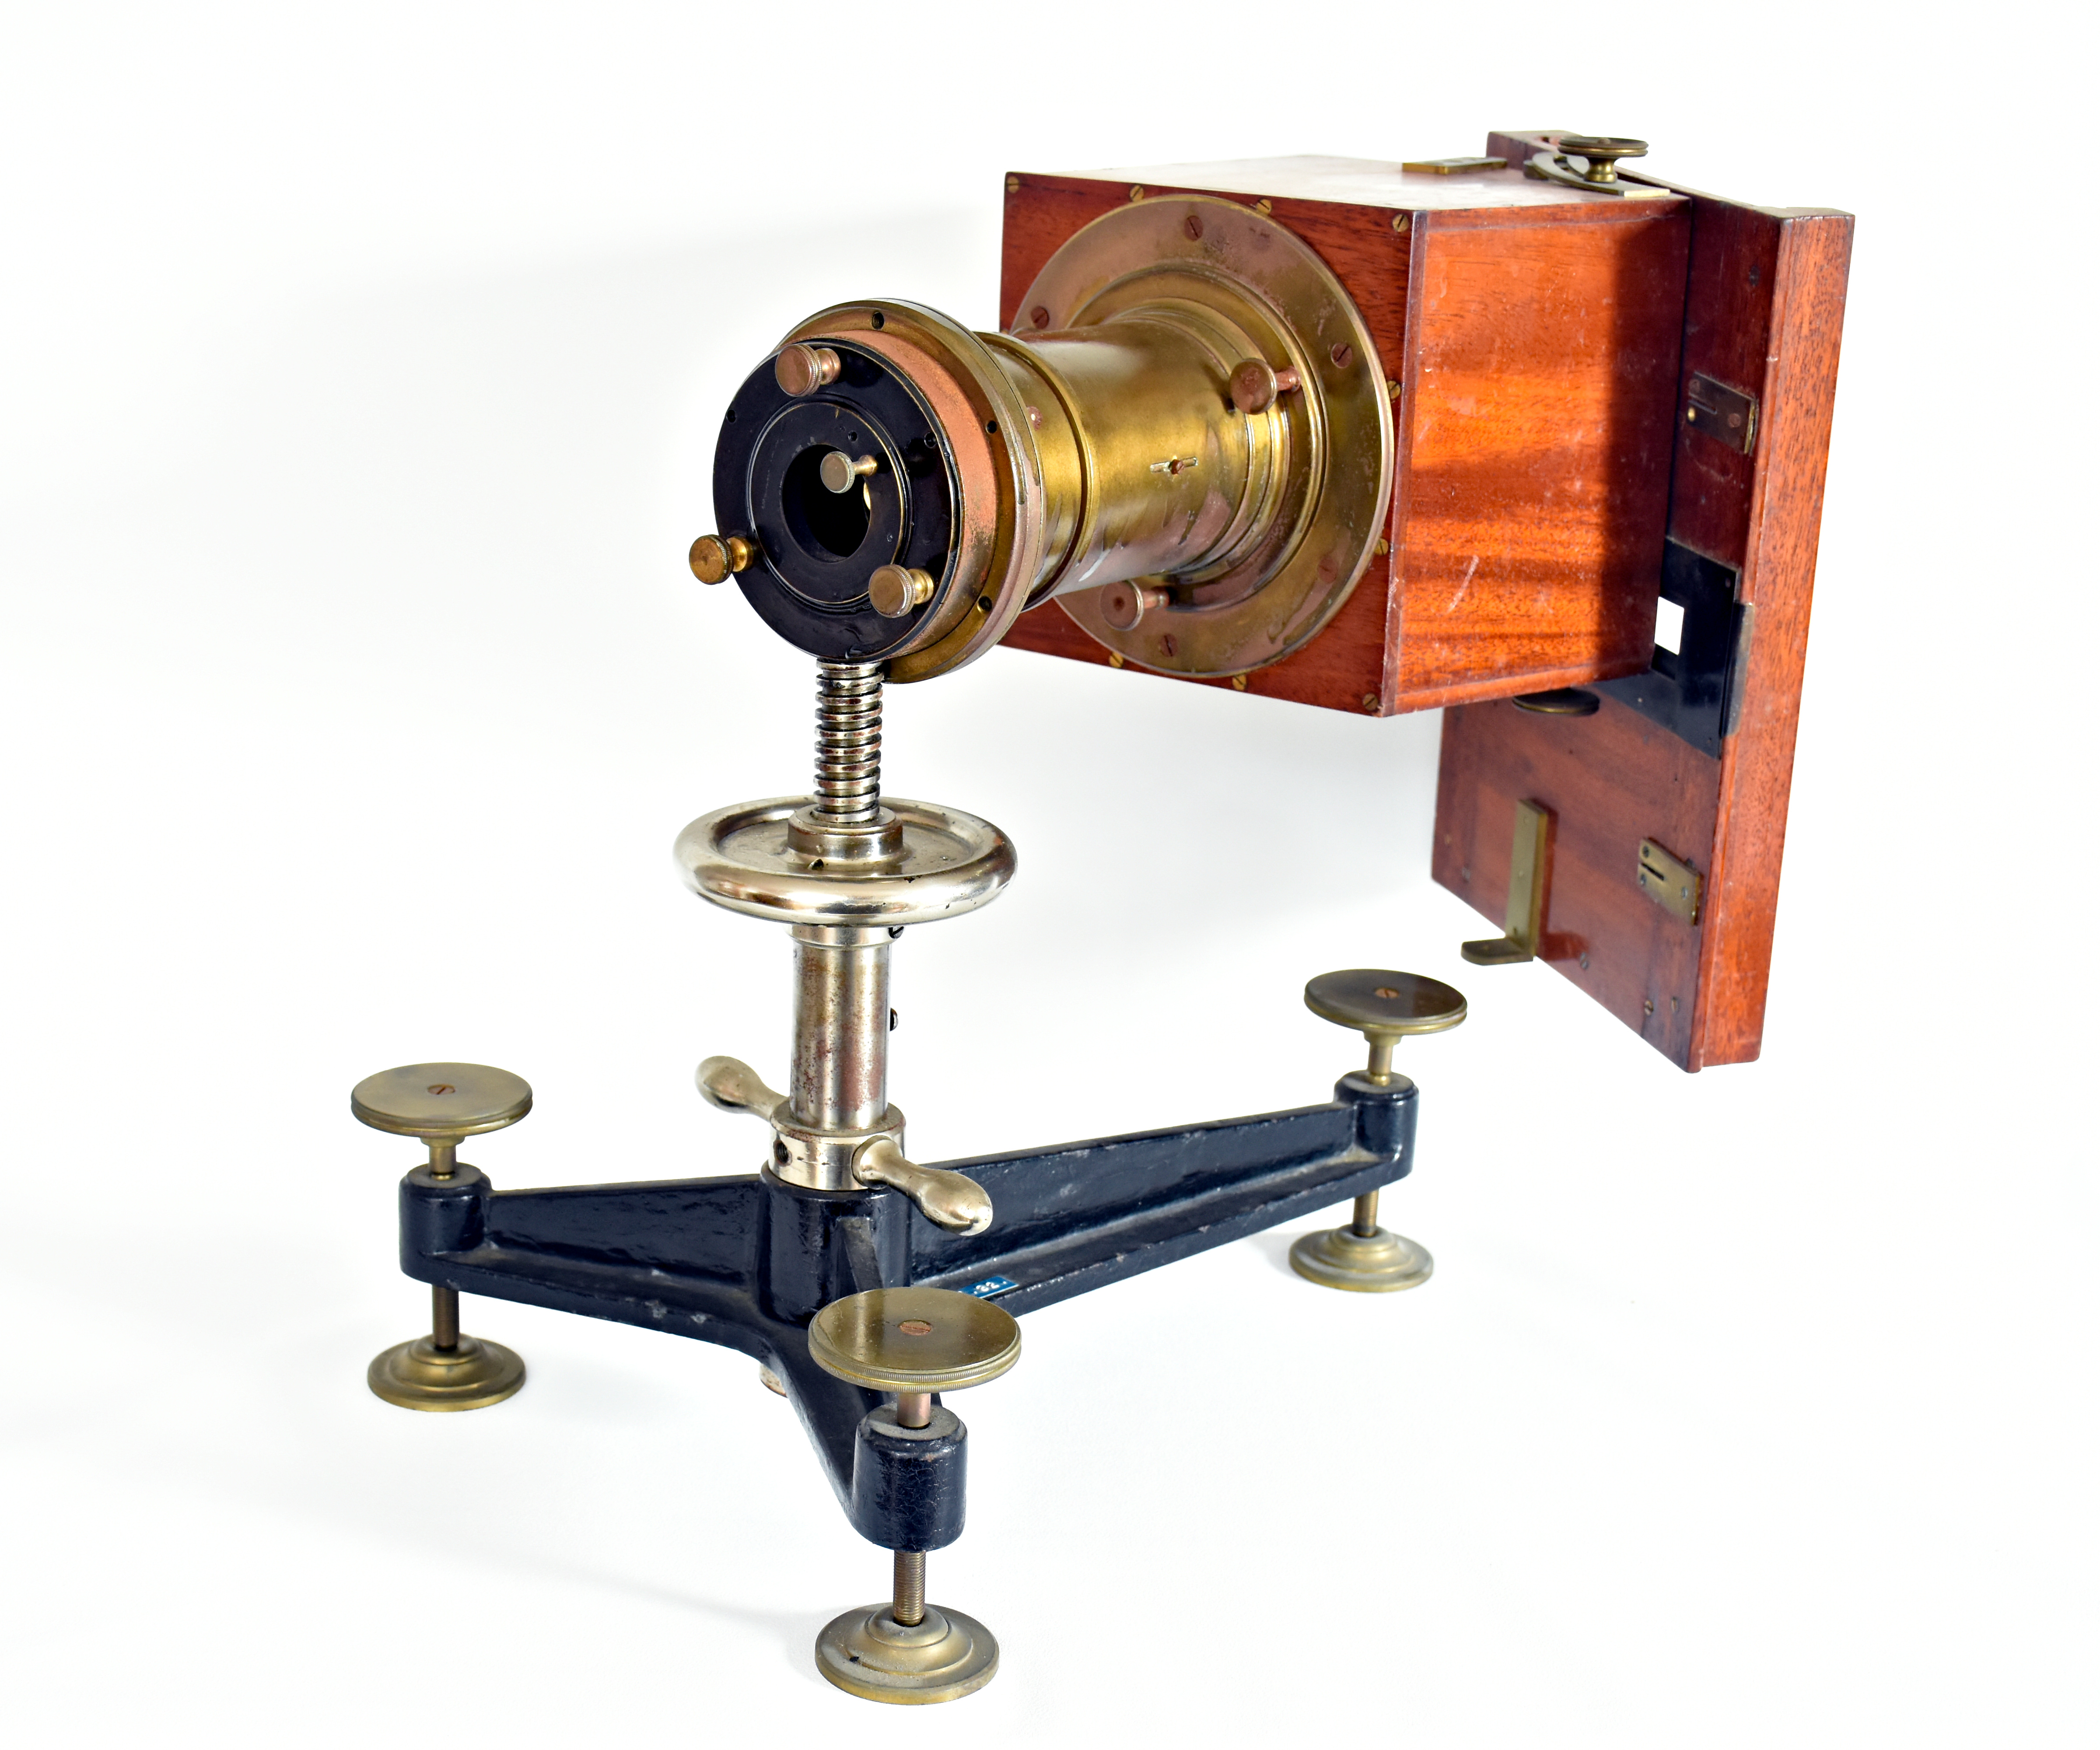 Gothard’s spectroscope of No. 10